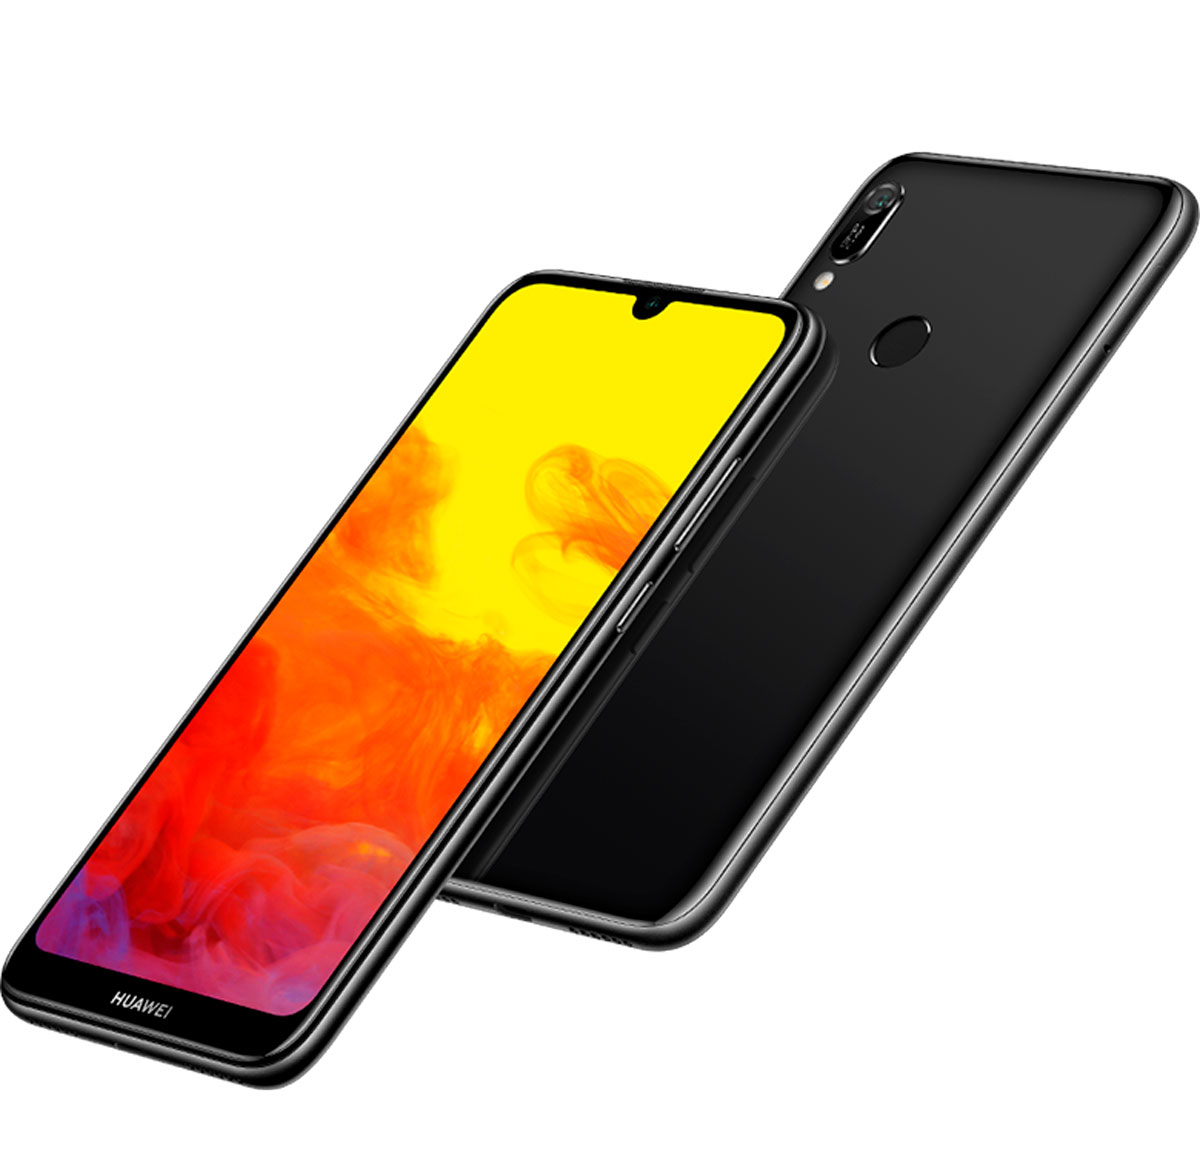 Huawei Y6 2019, móvil económico con gran pantalla